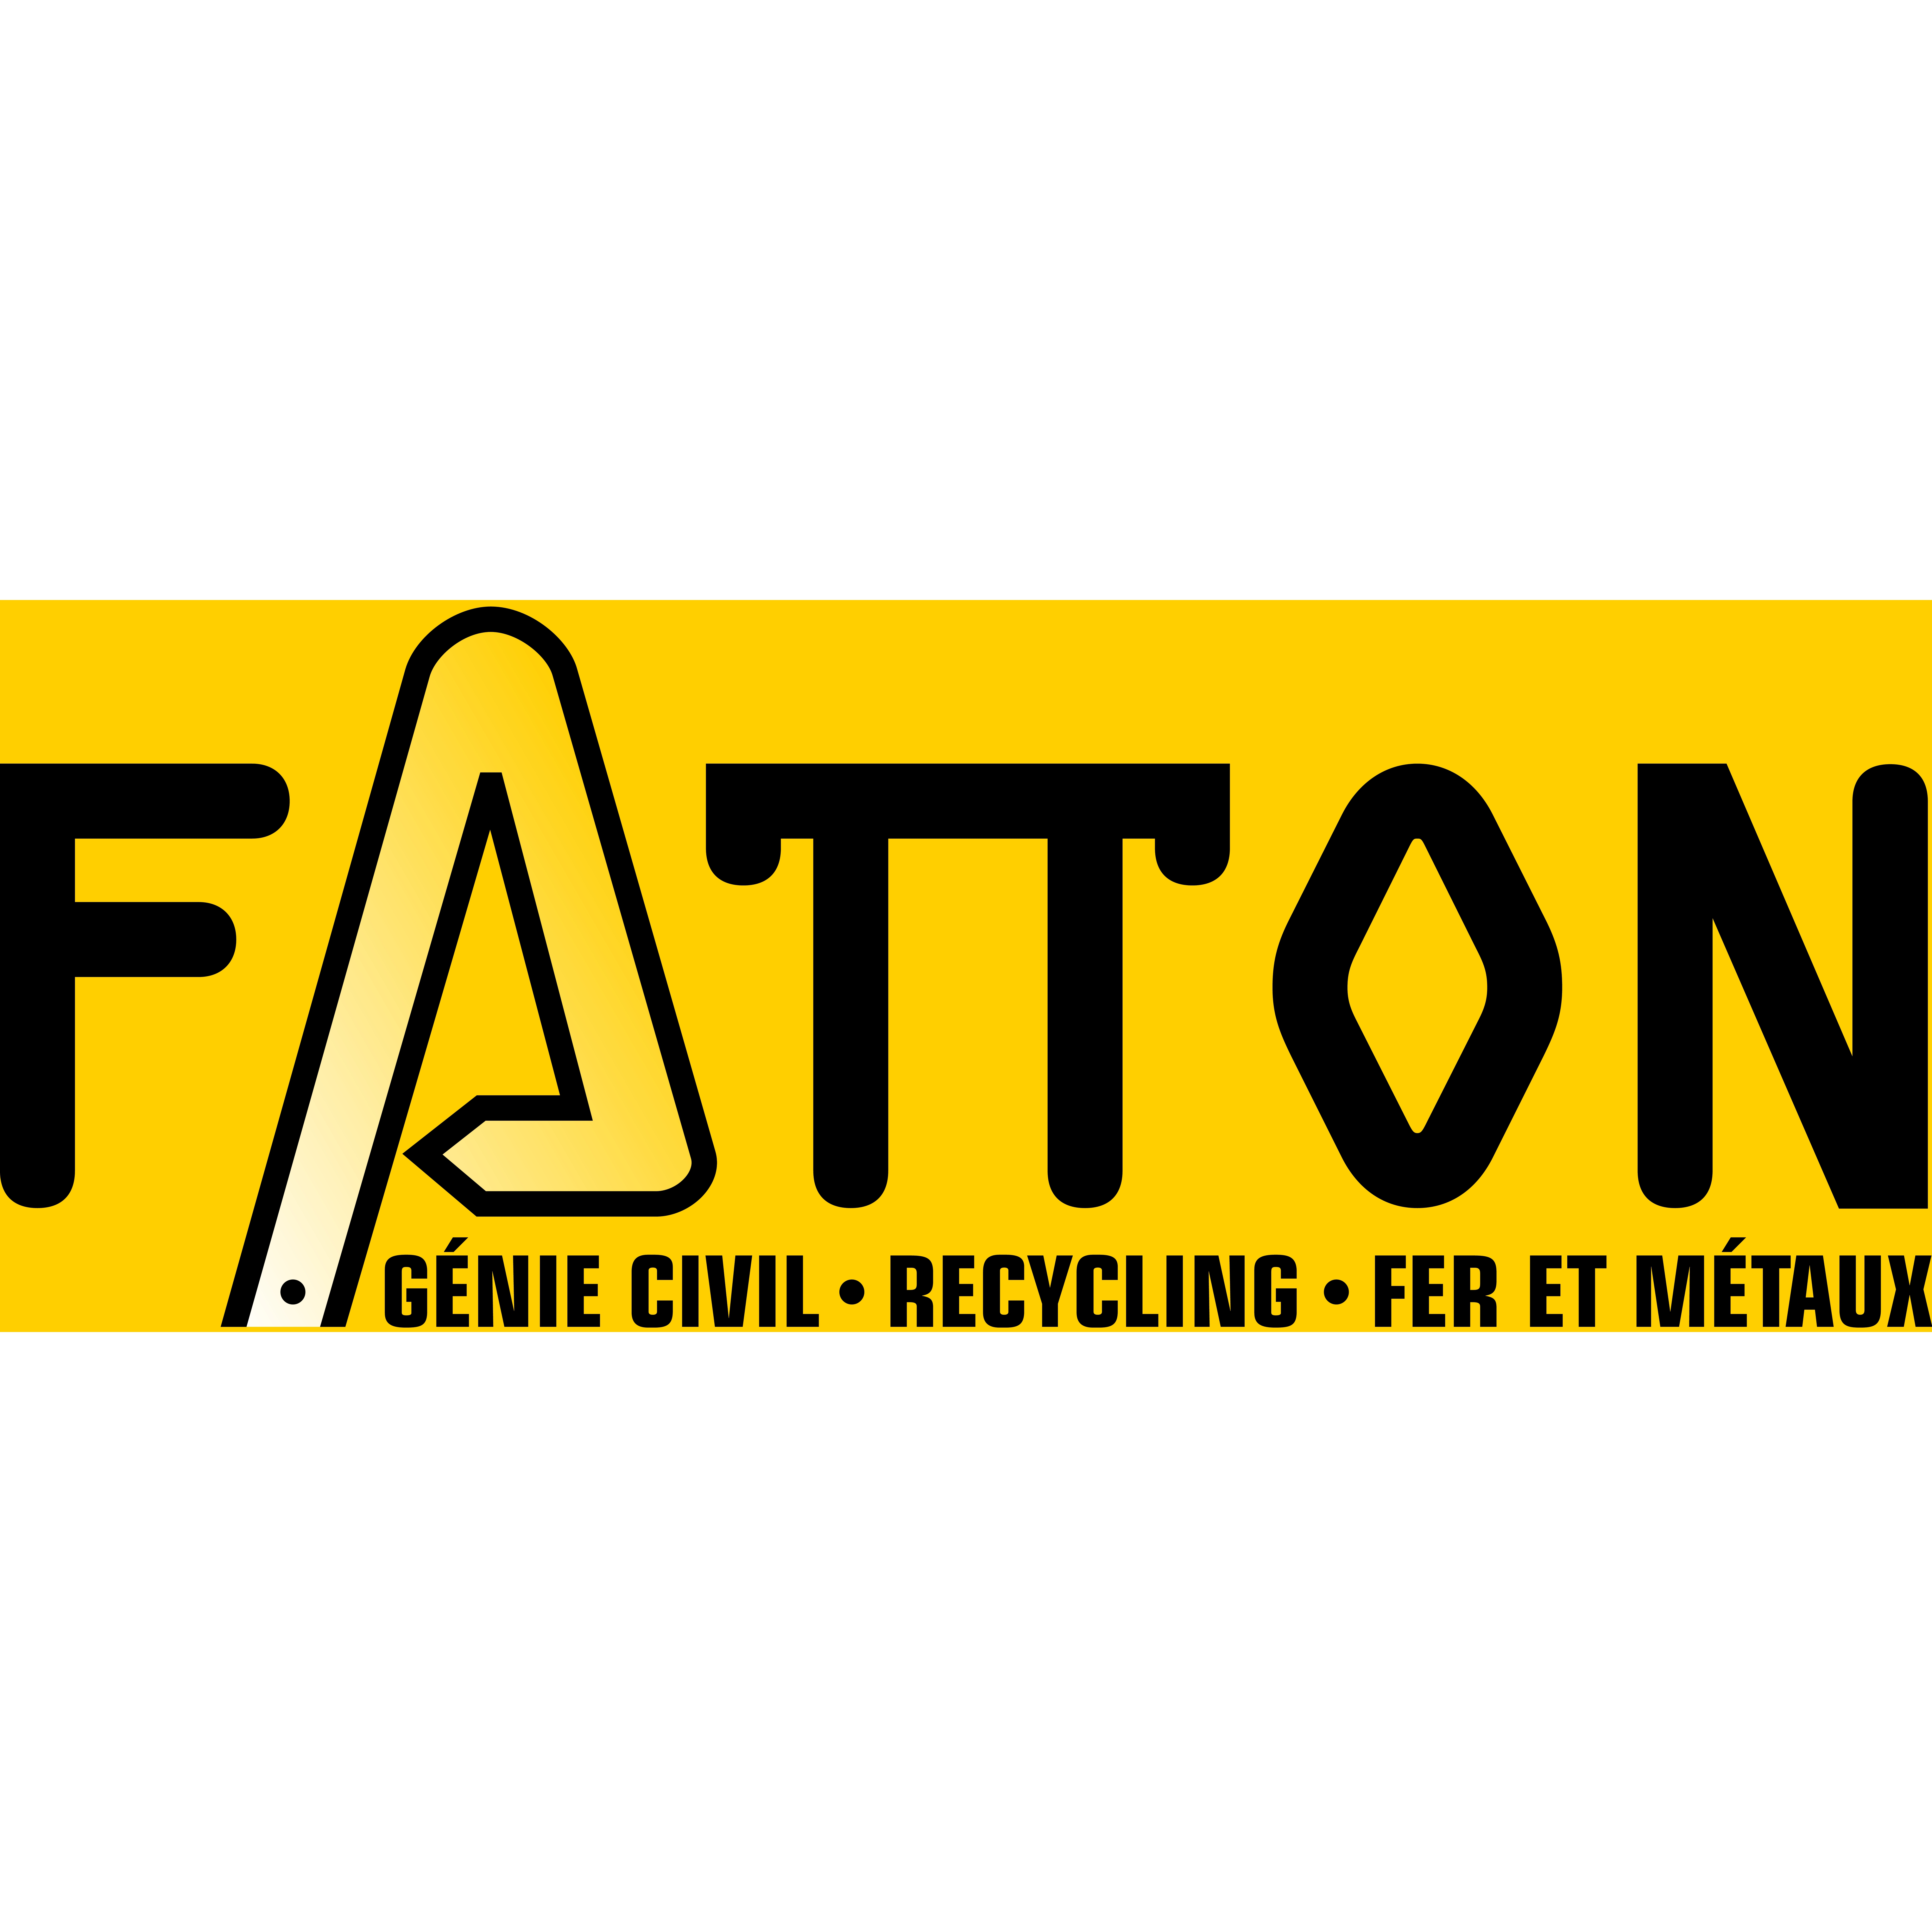 Fatton SA Logo